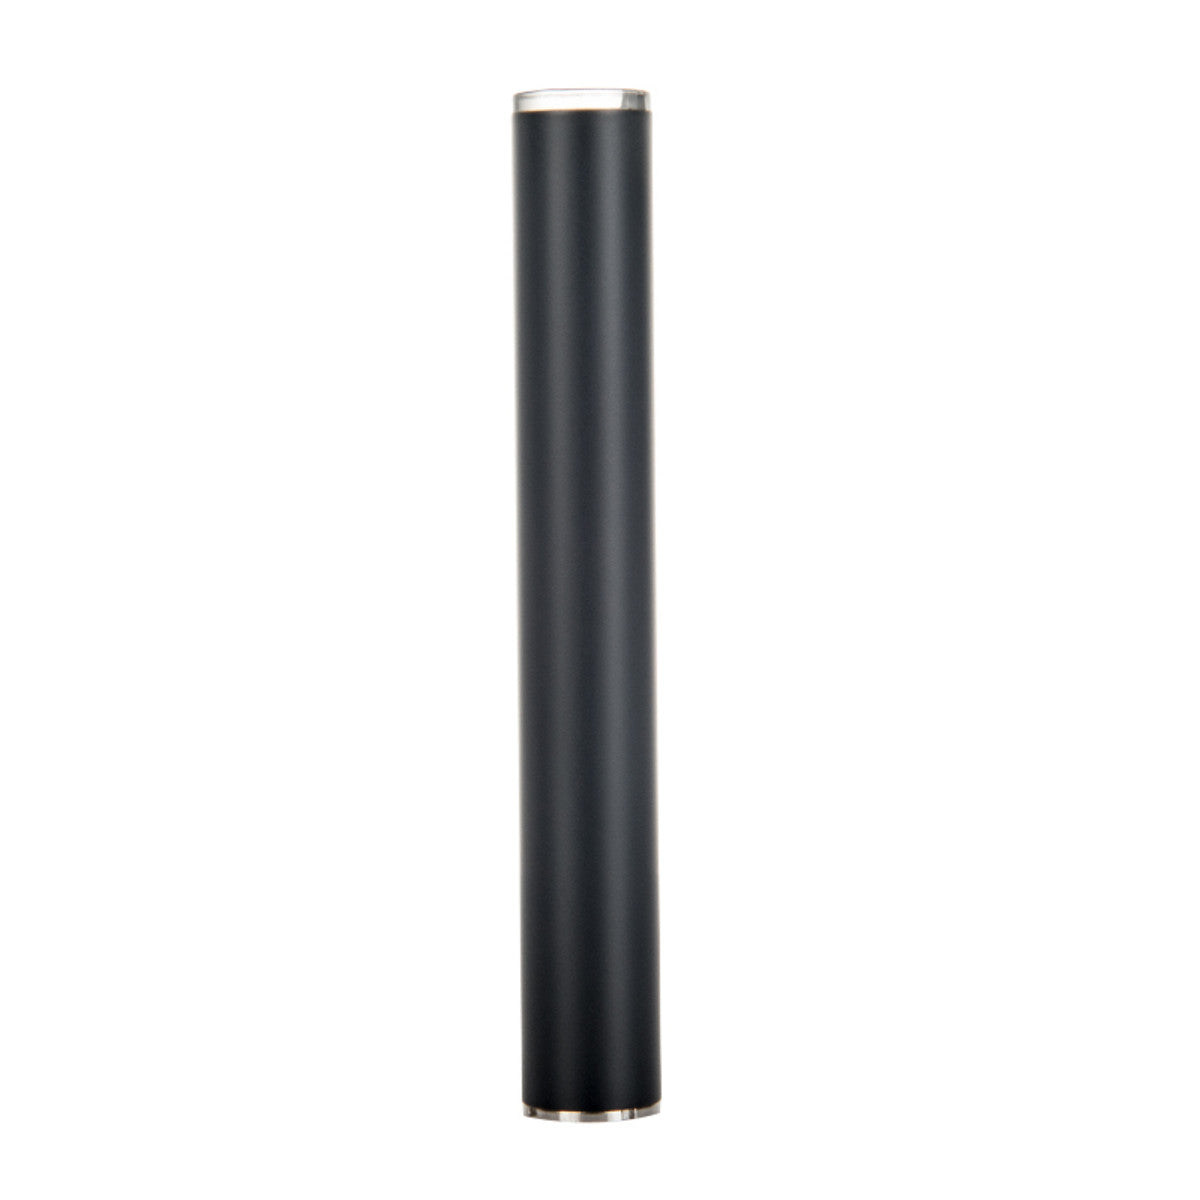 CCELL® Matte Black 350MAH M3 Battery for Vape Cartridges